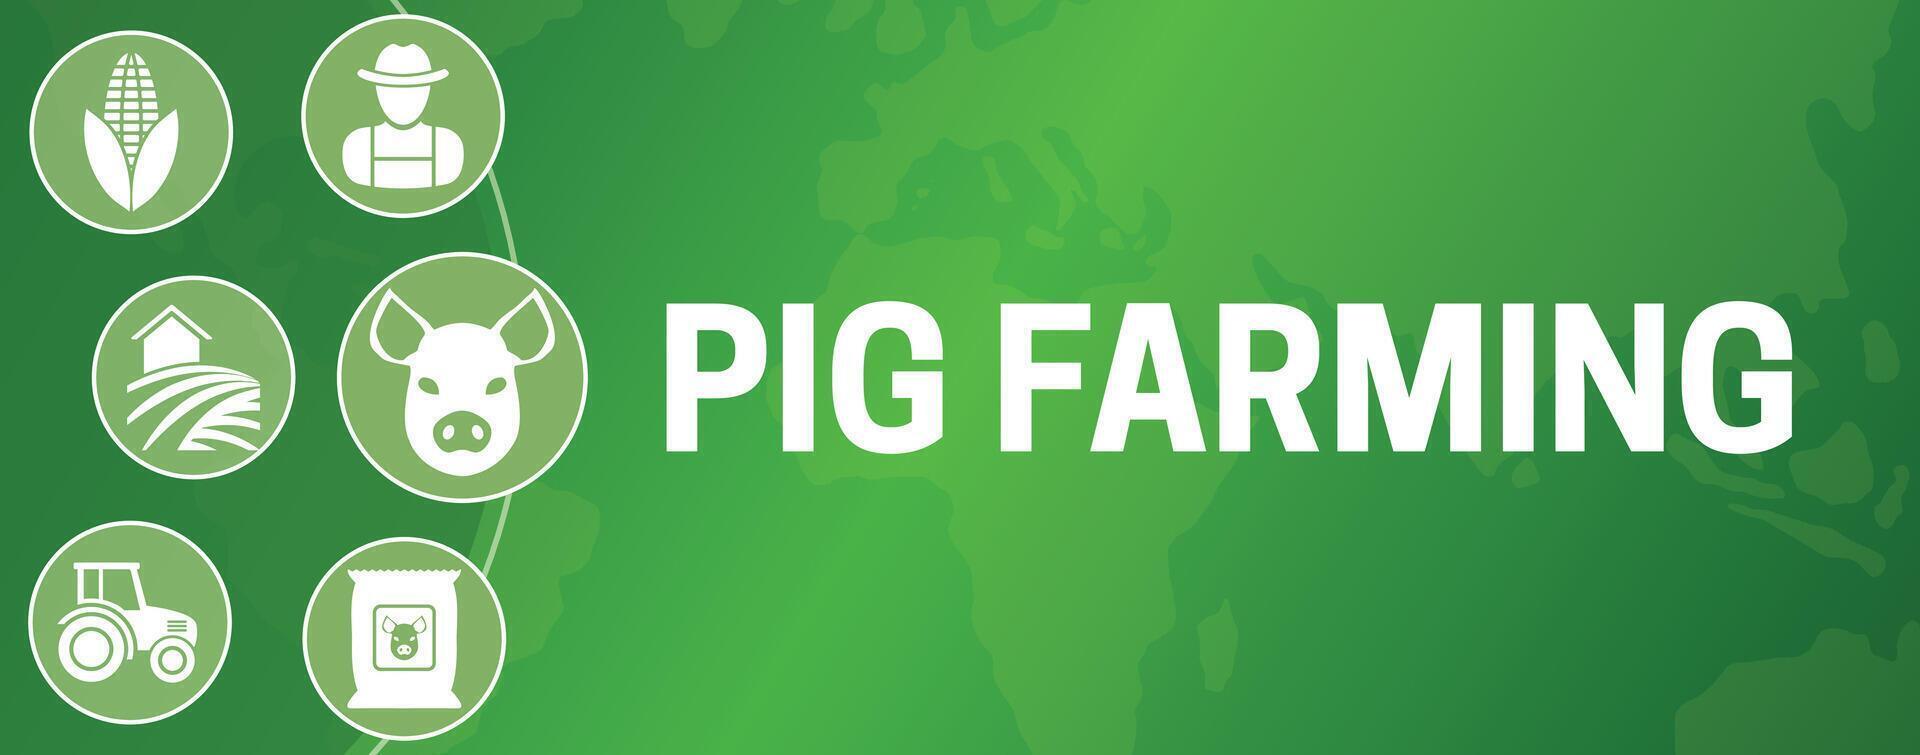 porco agricultura ilustração bandeira vetor